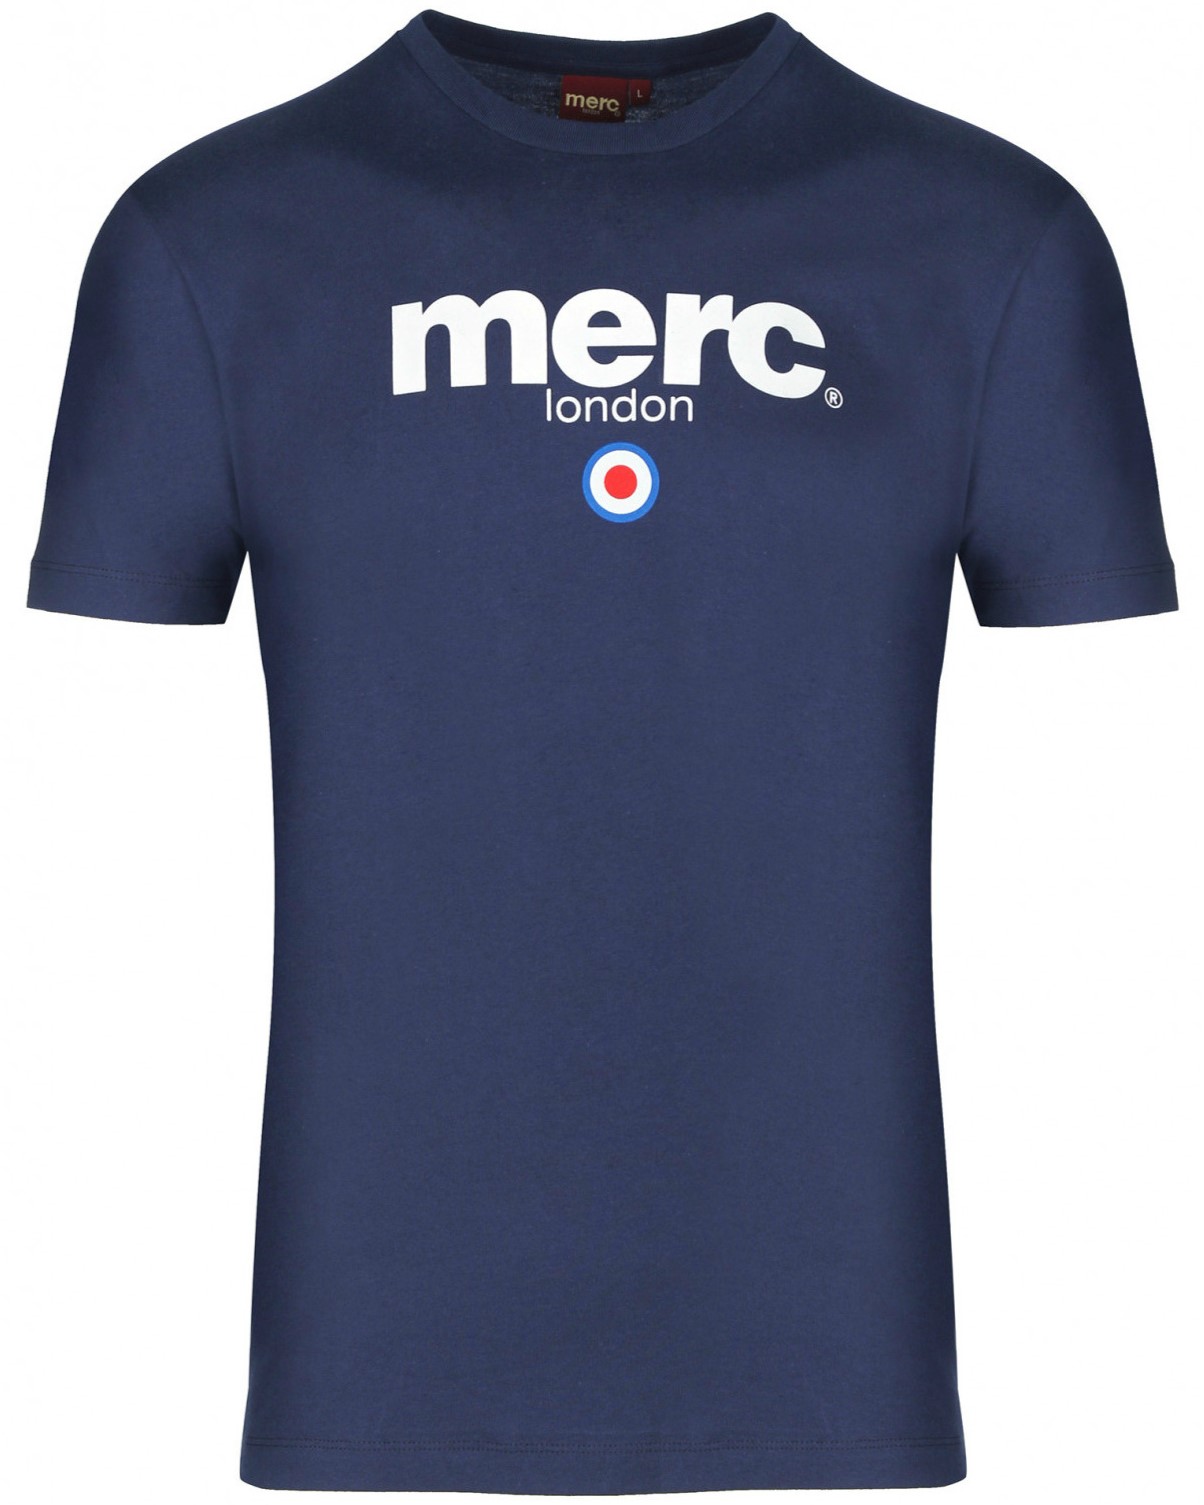 Мужская футболка с классическим логотипом Merc Brighton, navy (синяя), купить на официальном сайте